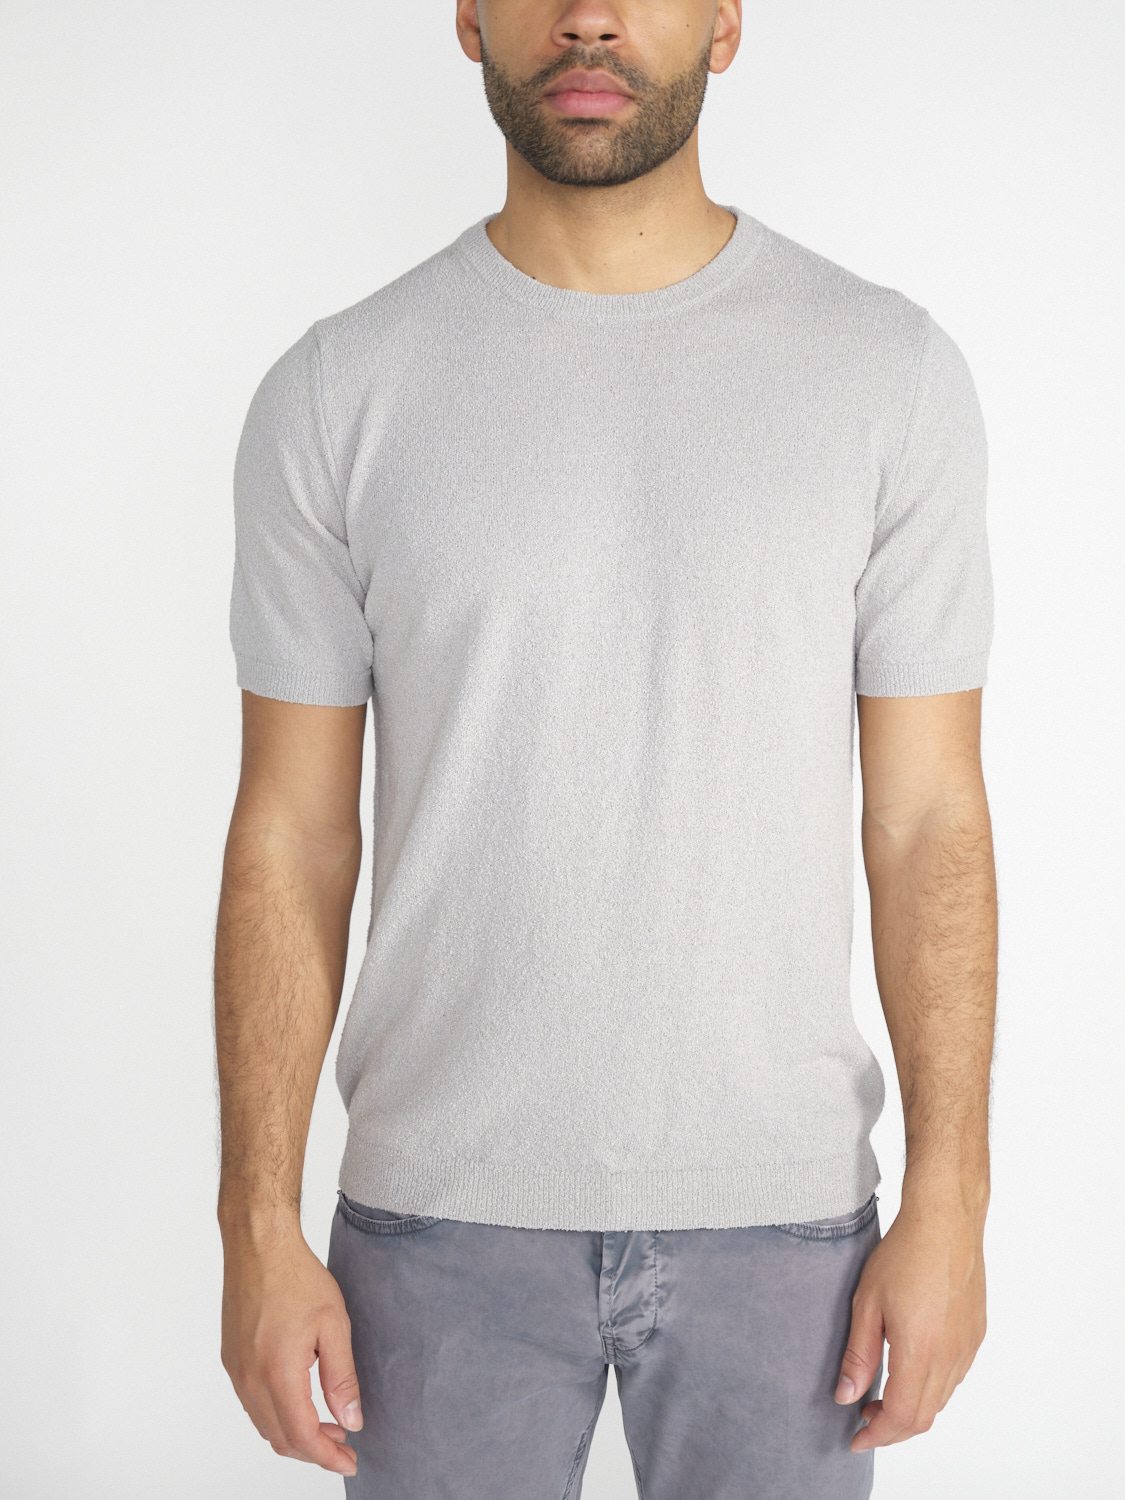 Stefan Brandt Eli 30 - T-shirt girocollo in cotone grigio XL